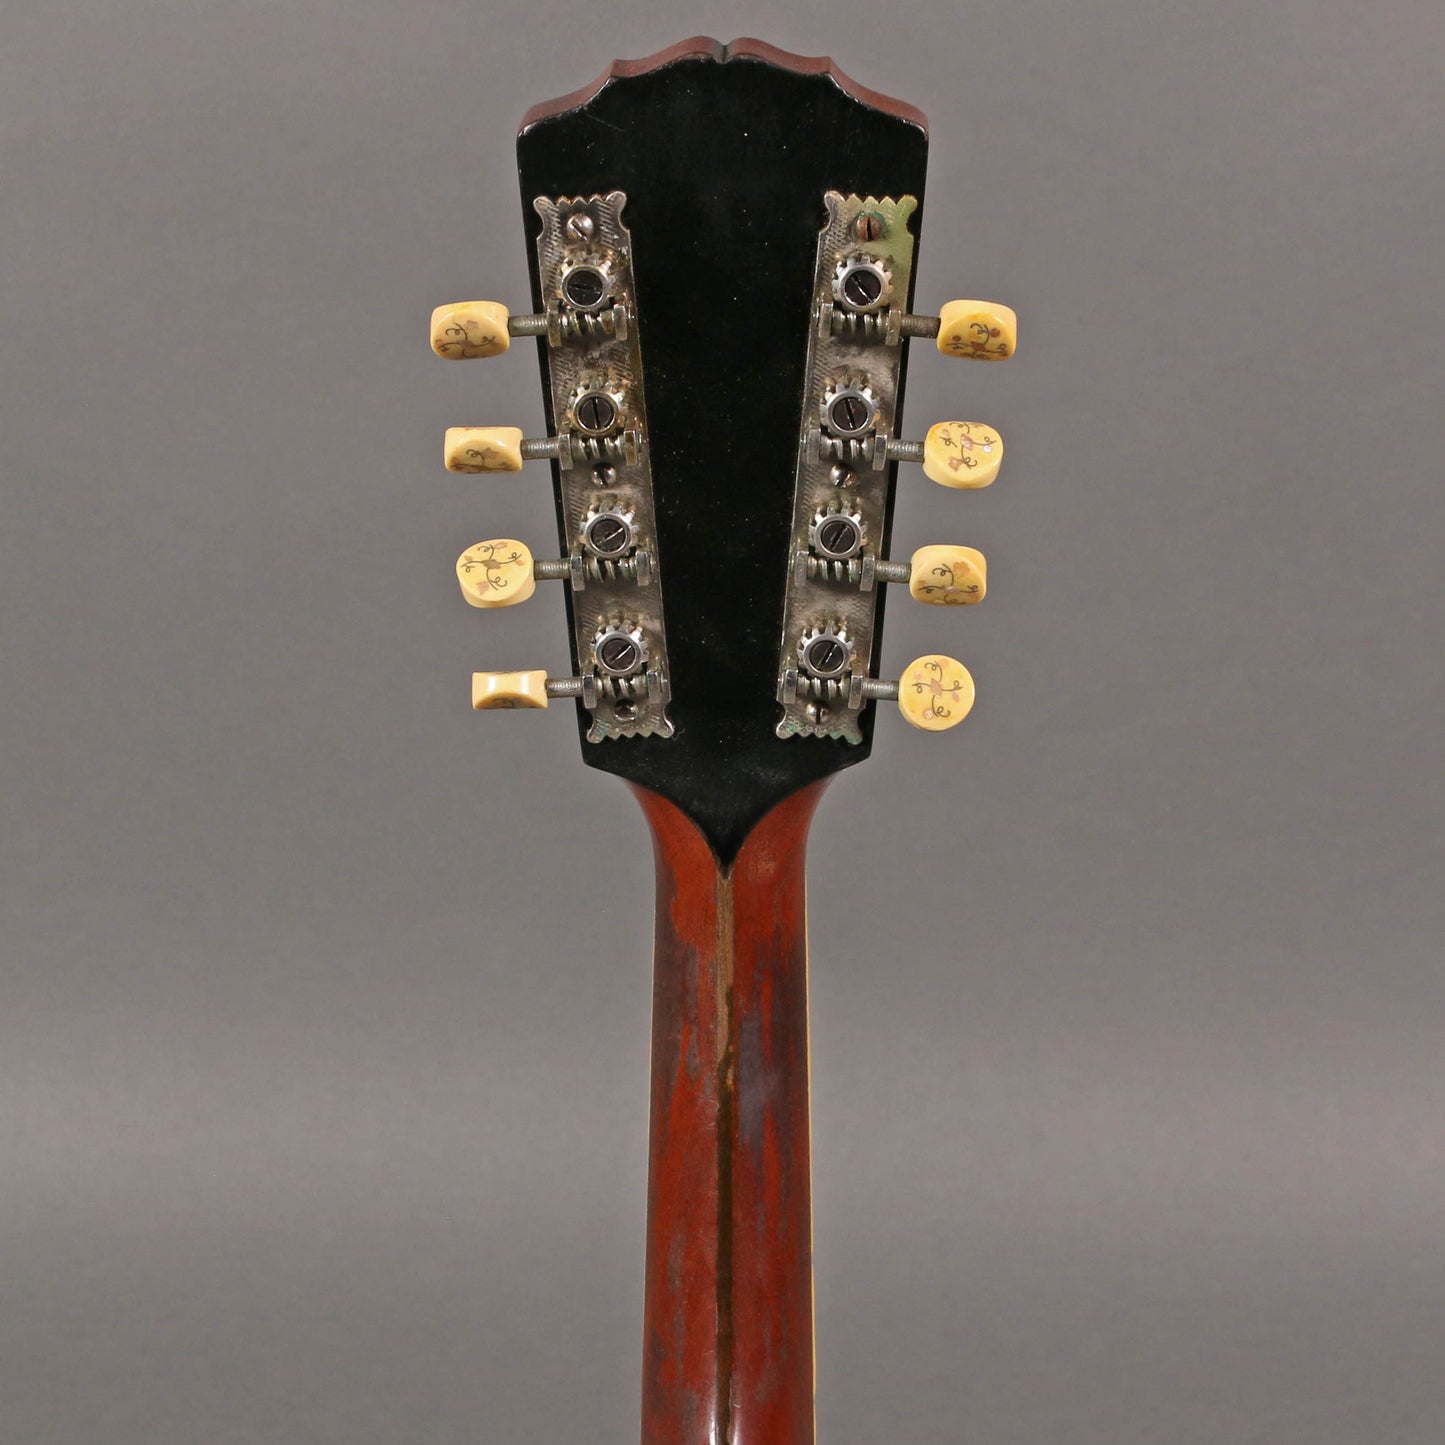 1917 Gibson A-4 Mandolin